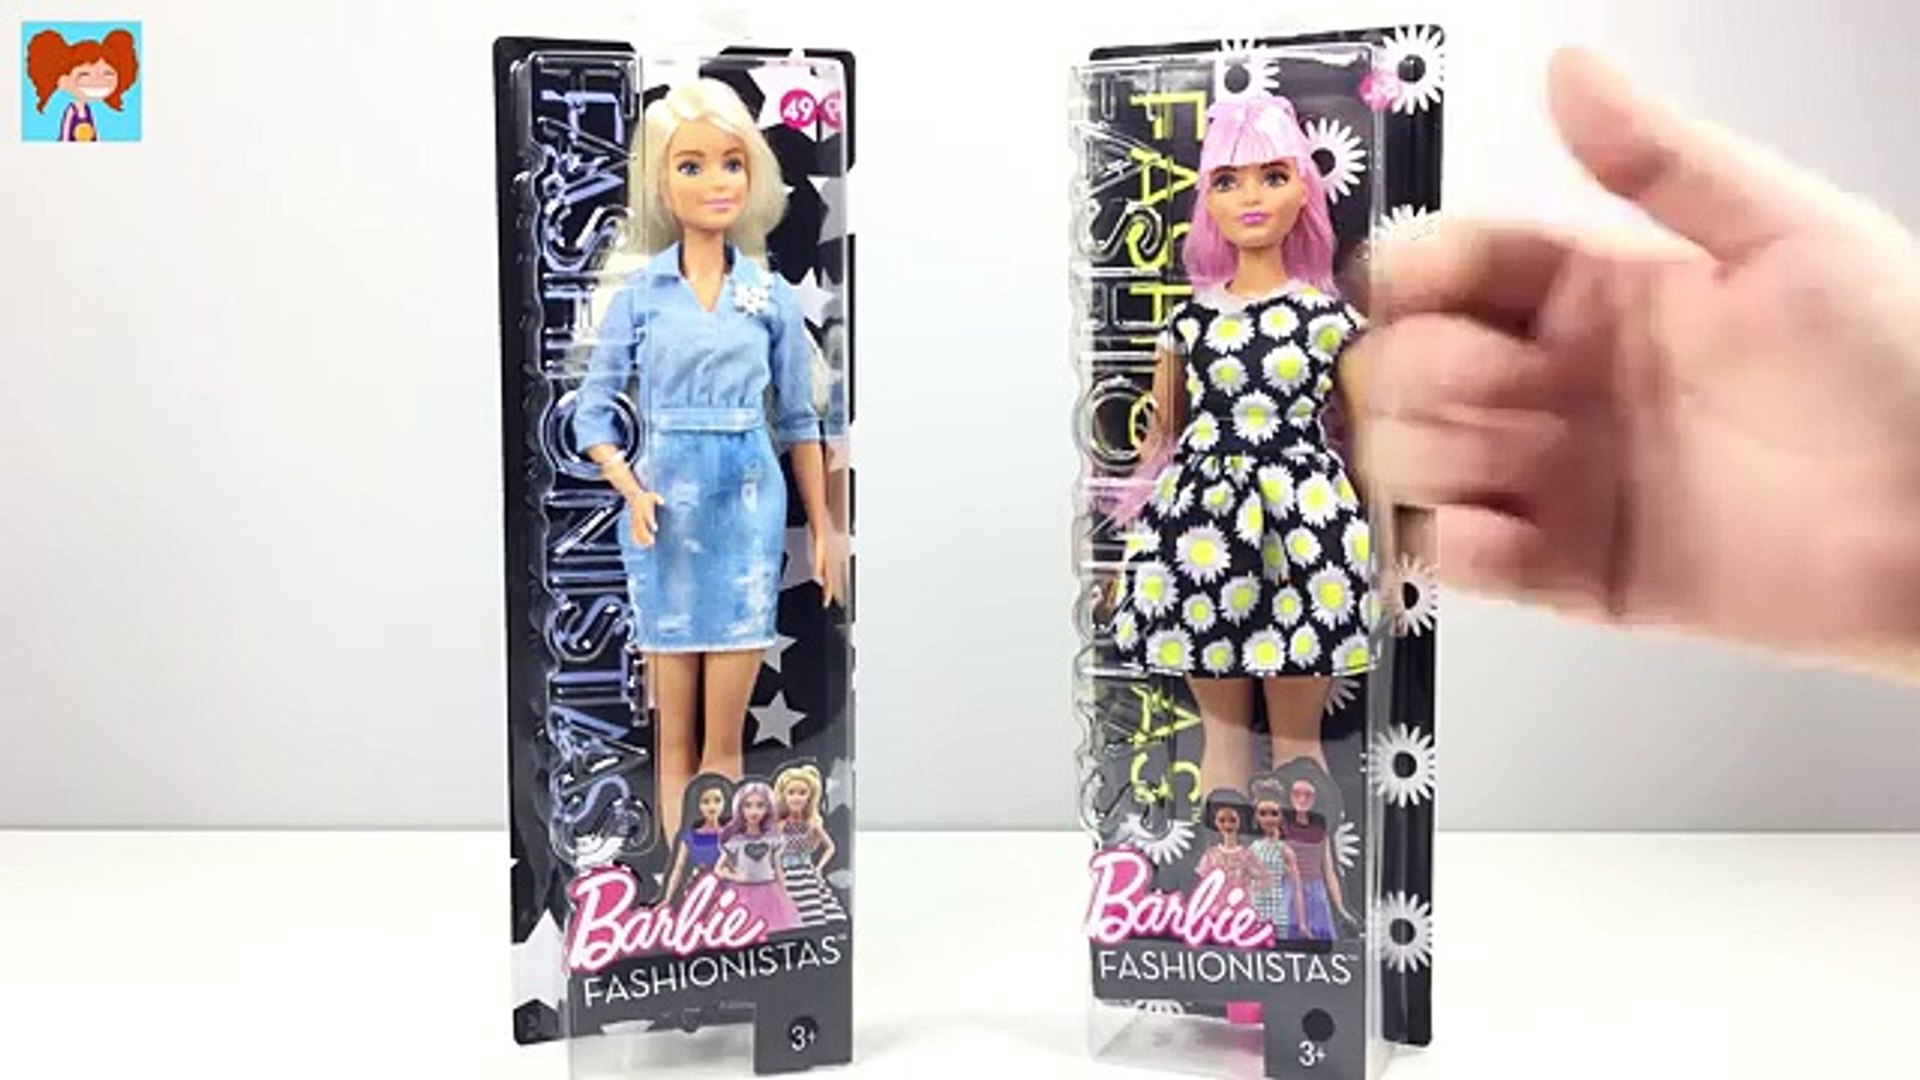 Pembe Barbie Fashionistas Bebeğini Buldum! Yeni Barbie Büyüleyici Parti  Bebekleri Paket - Dailymotion Video